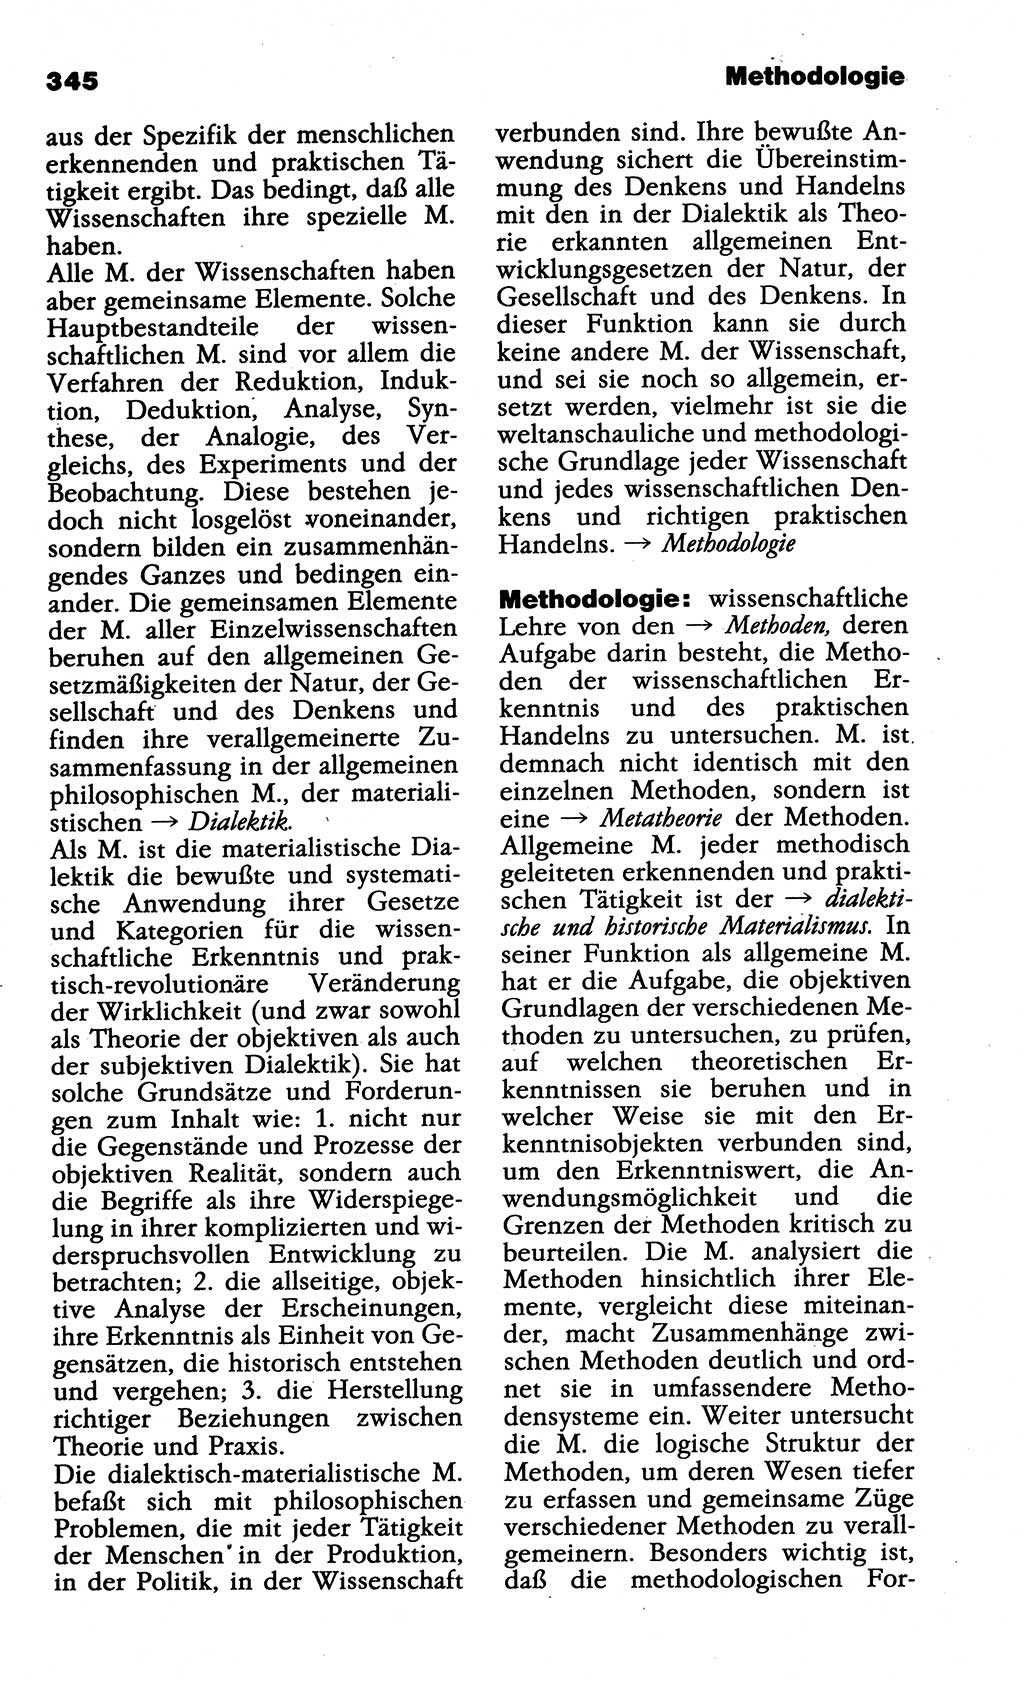 Wörterbuch der marxistisch-leninistischen Philosophie [Deutsche Demokratische Republik (DDR)] 1985, Seite 345 (Wb. ML Phil. DDR 1985, S. 345)